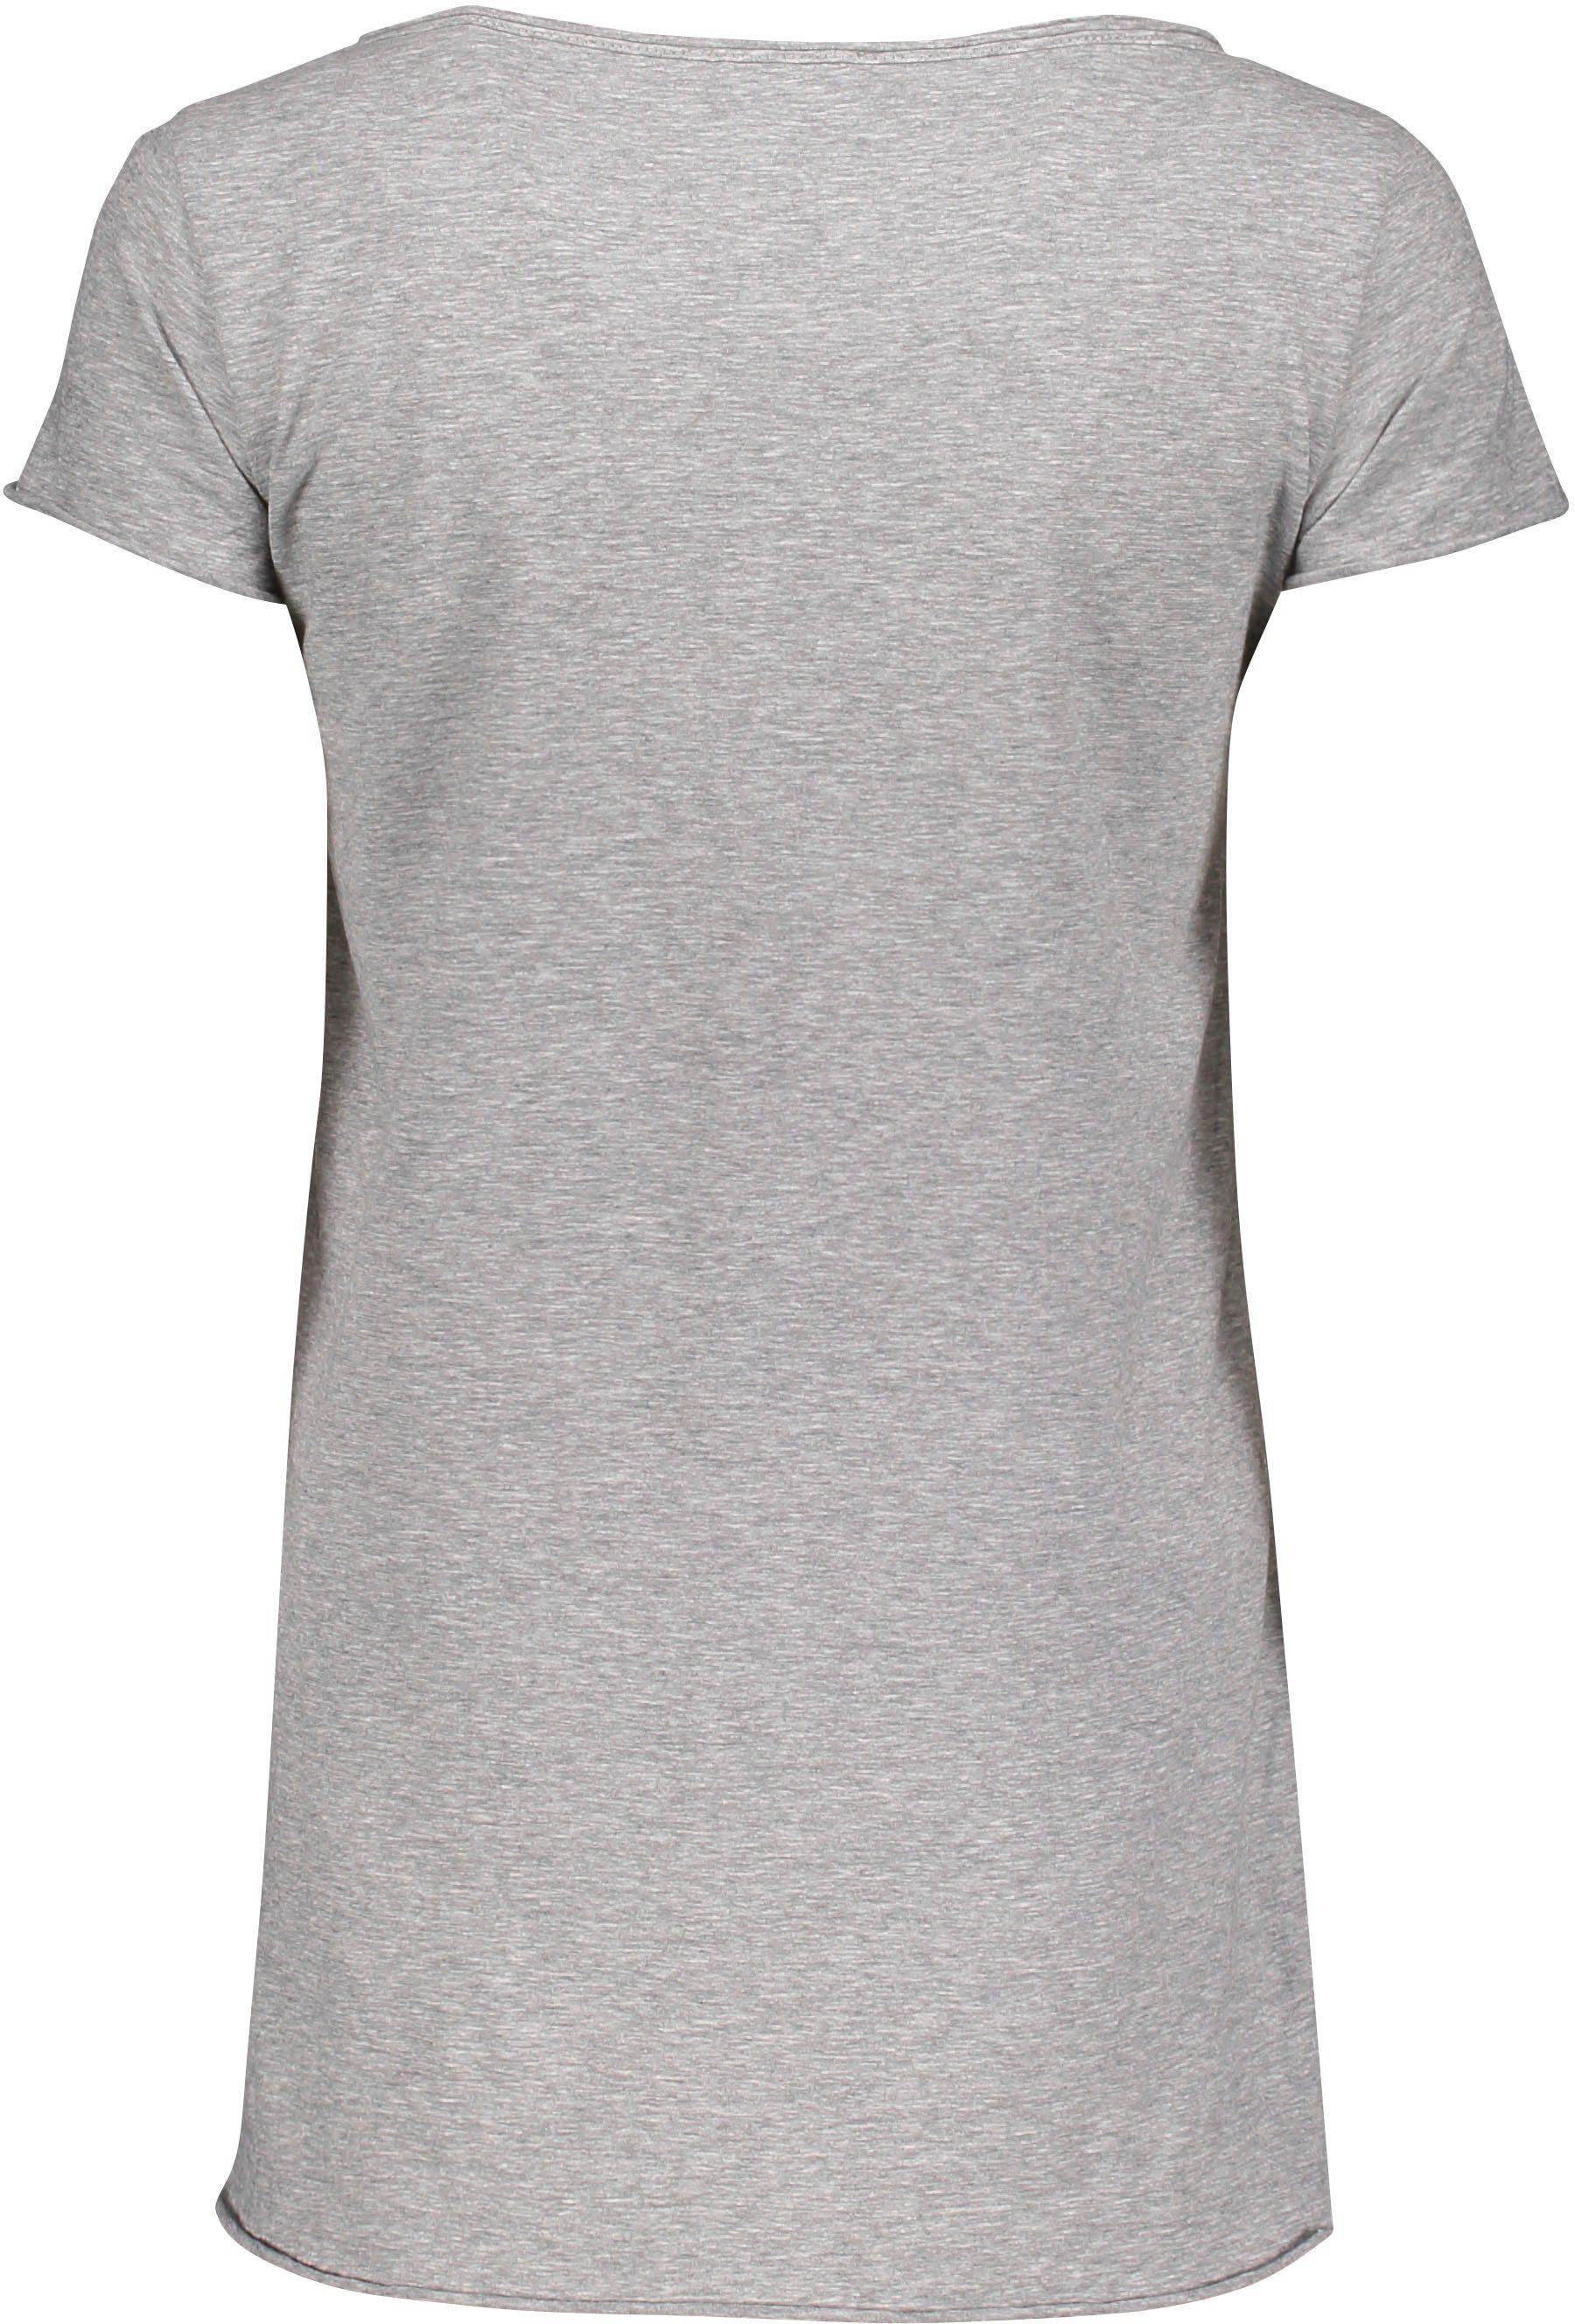 1907 (grau grigio leicht Please melange M00A T-Shirt angeschnittenen Please Jeans Metal-Label Saumabschlüssen mit und meliert)